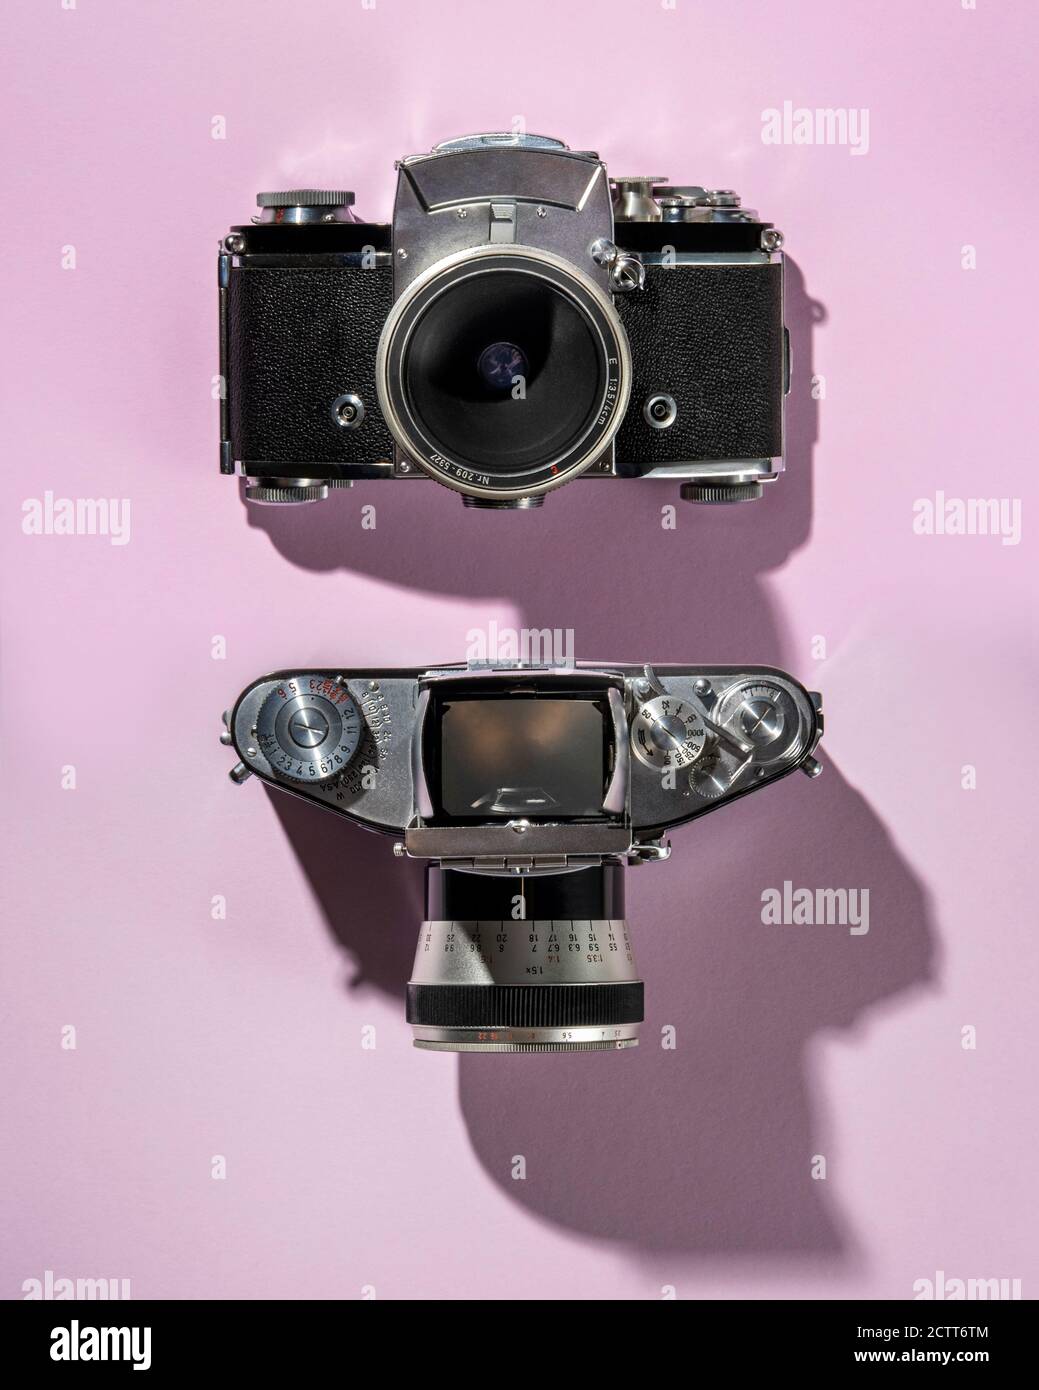 Vue de dessus et de face d'un appareil photo rétro 35 mm Banque D'Images